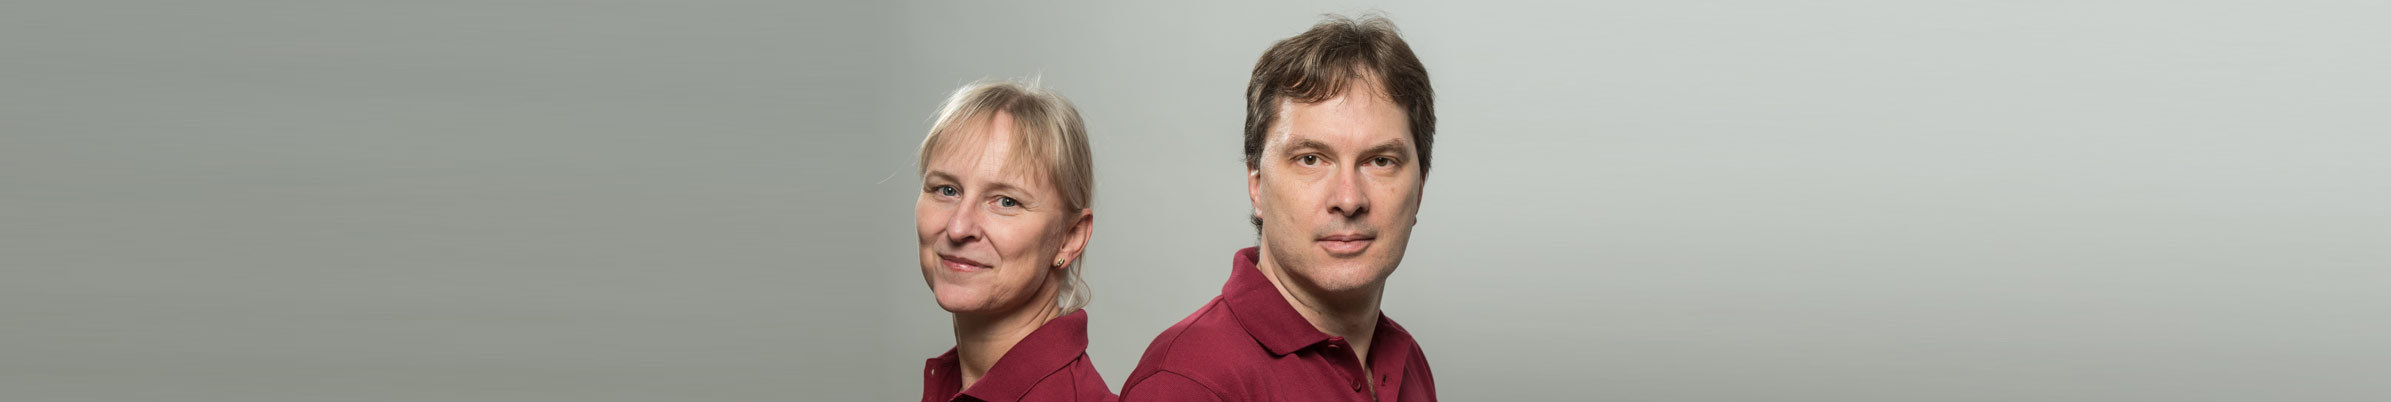 Dr. med. Holger Winkel und Claudia Winkel-Krüger - Ihre internistische Gemeinschaftspraxis in Bockenem